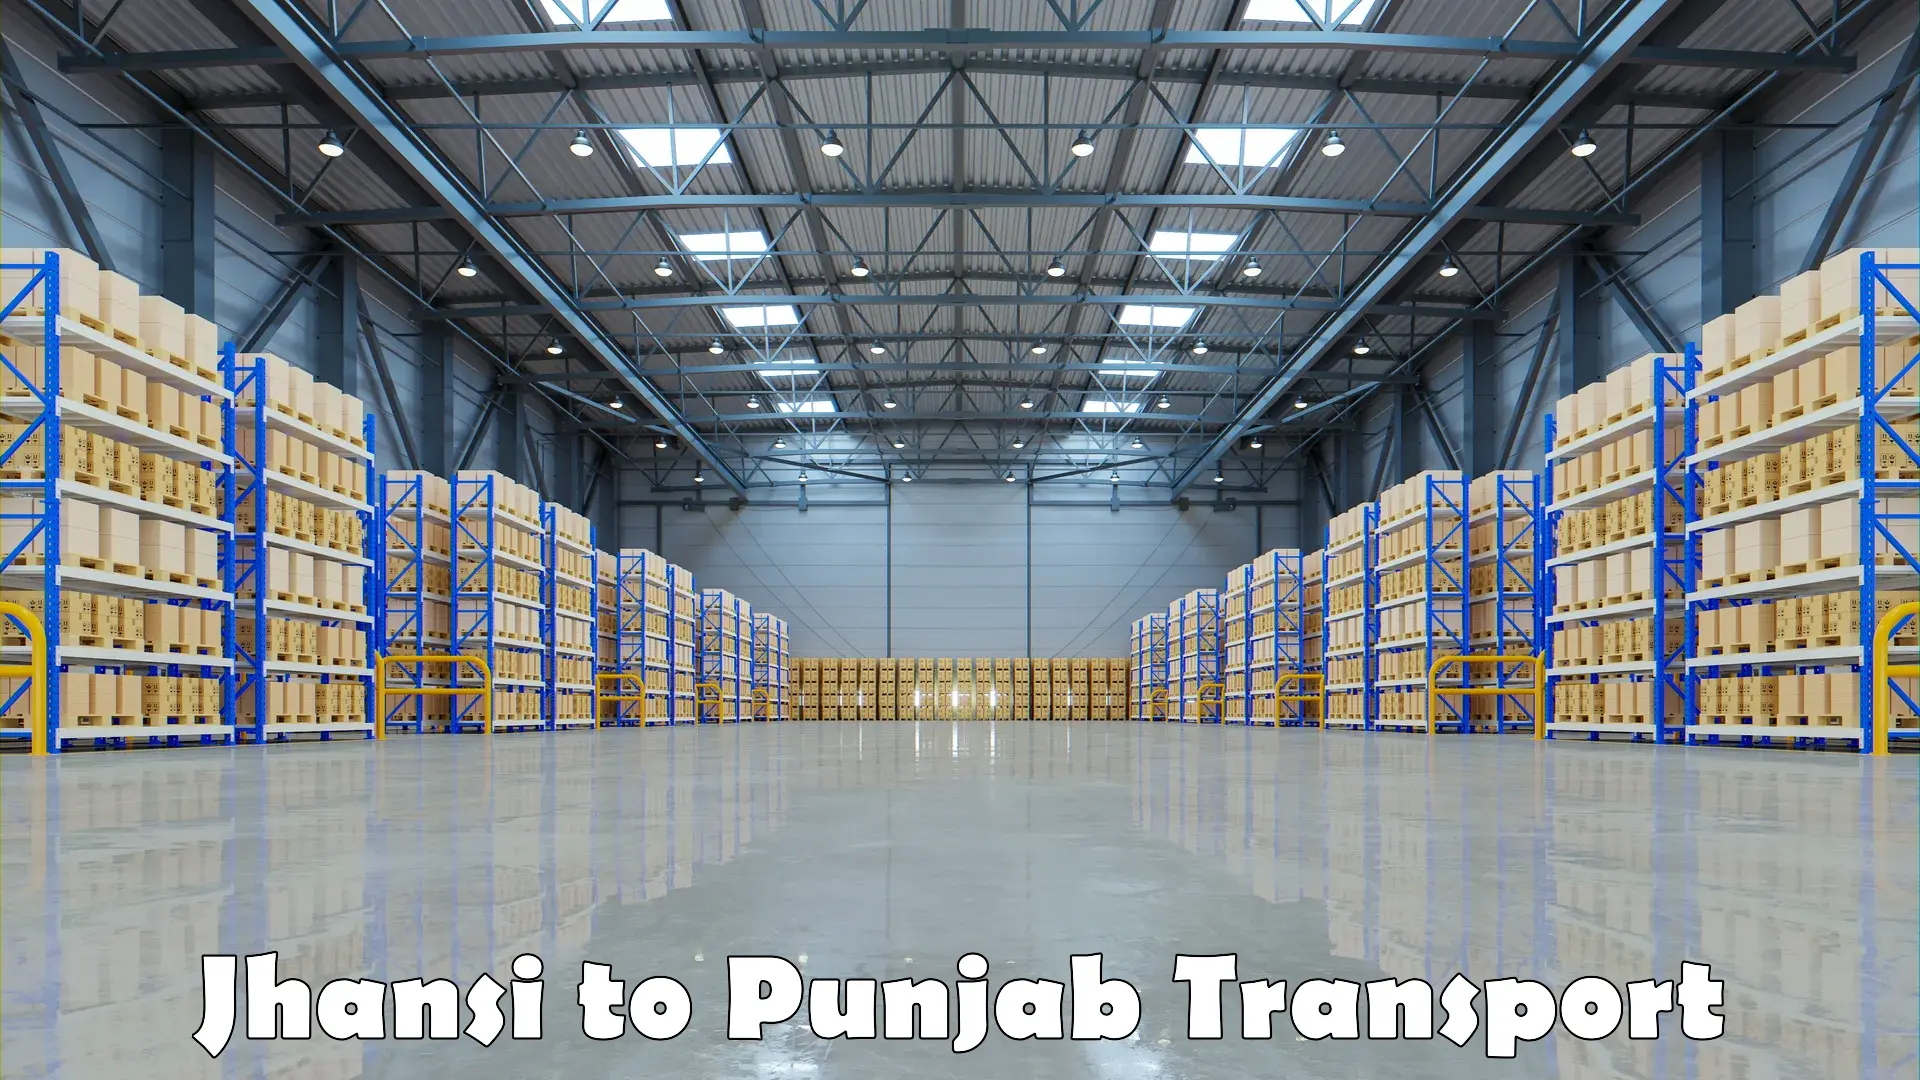 Online transport Jhansi to Punjab